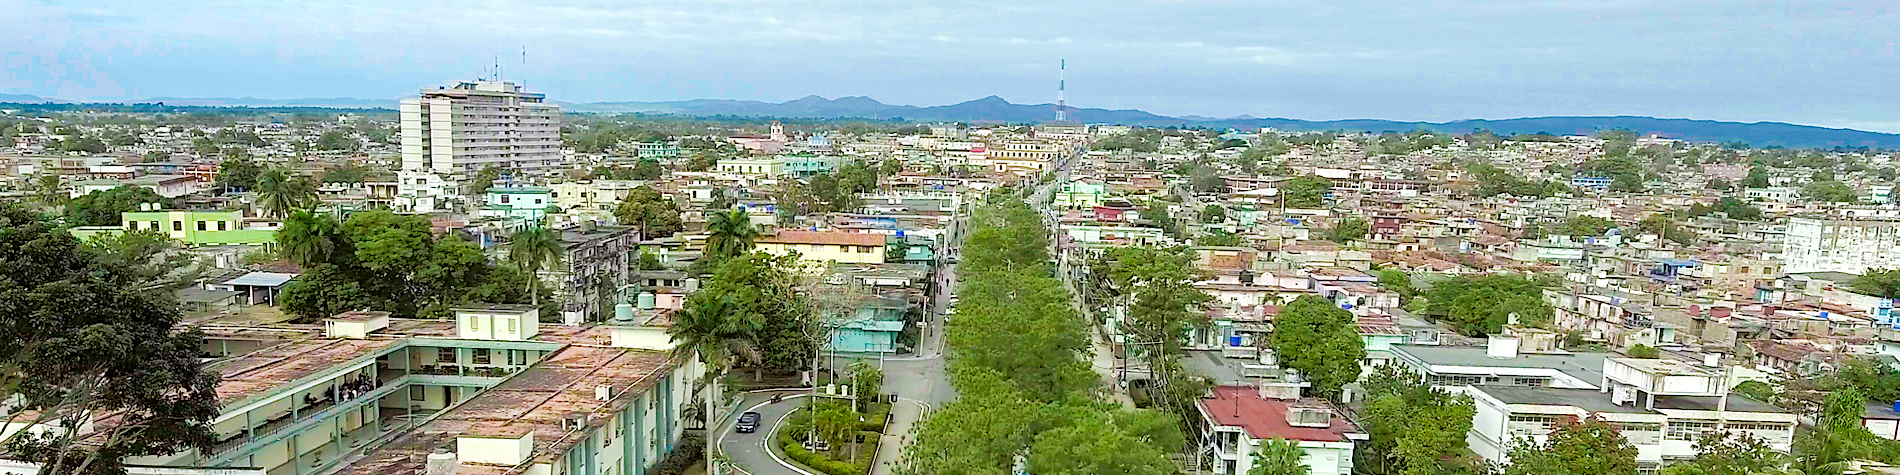 Aerial view of Pinar del Rio city , Cuba